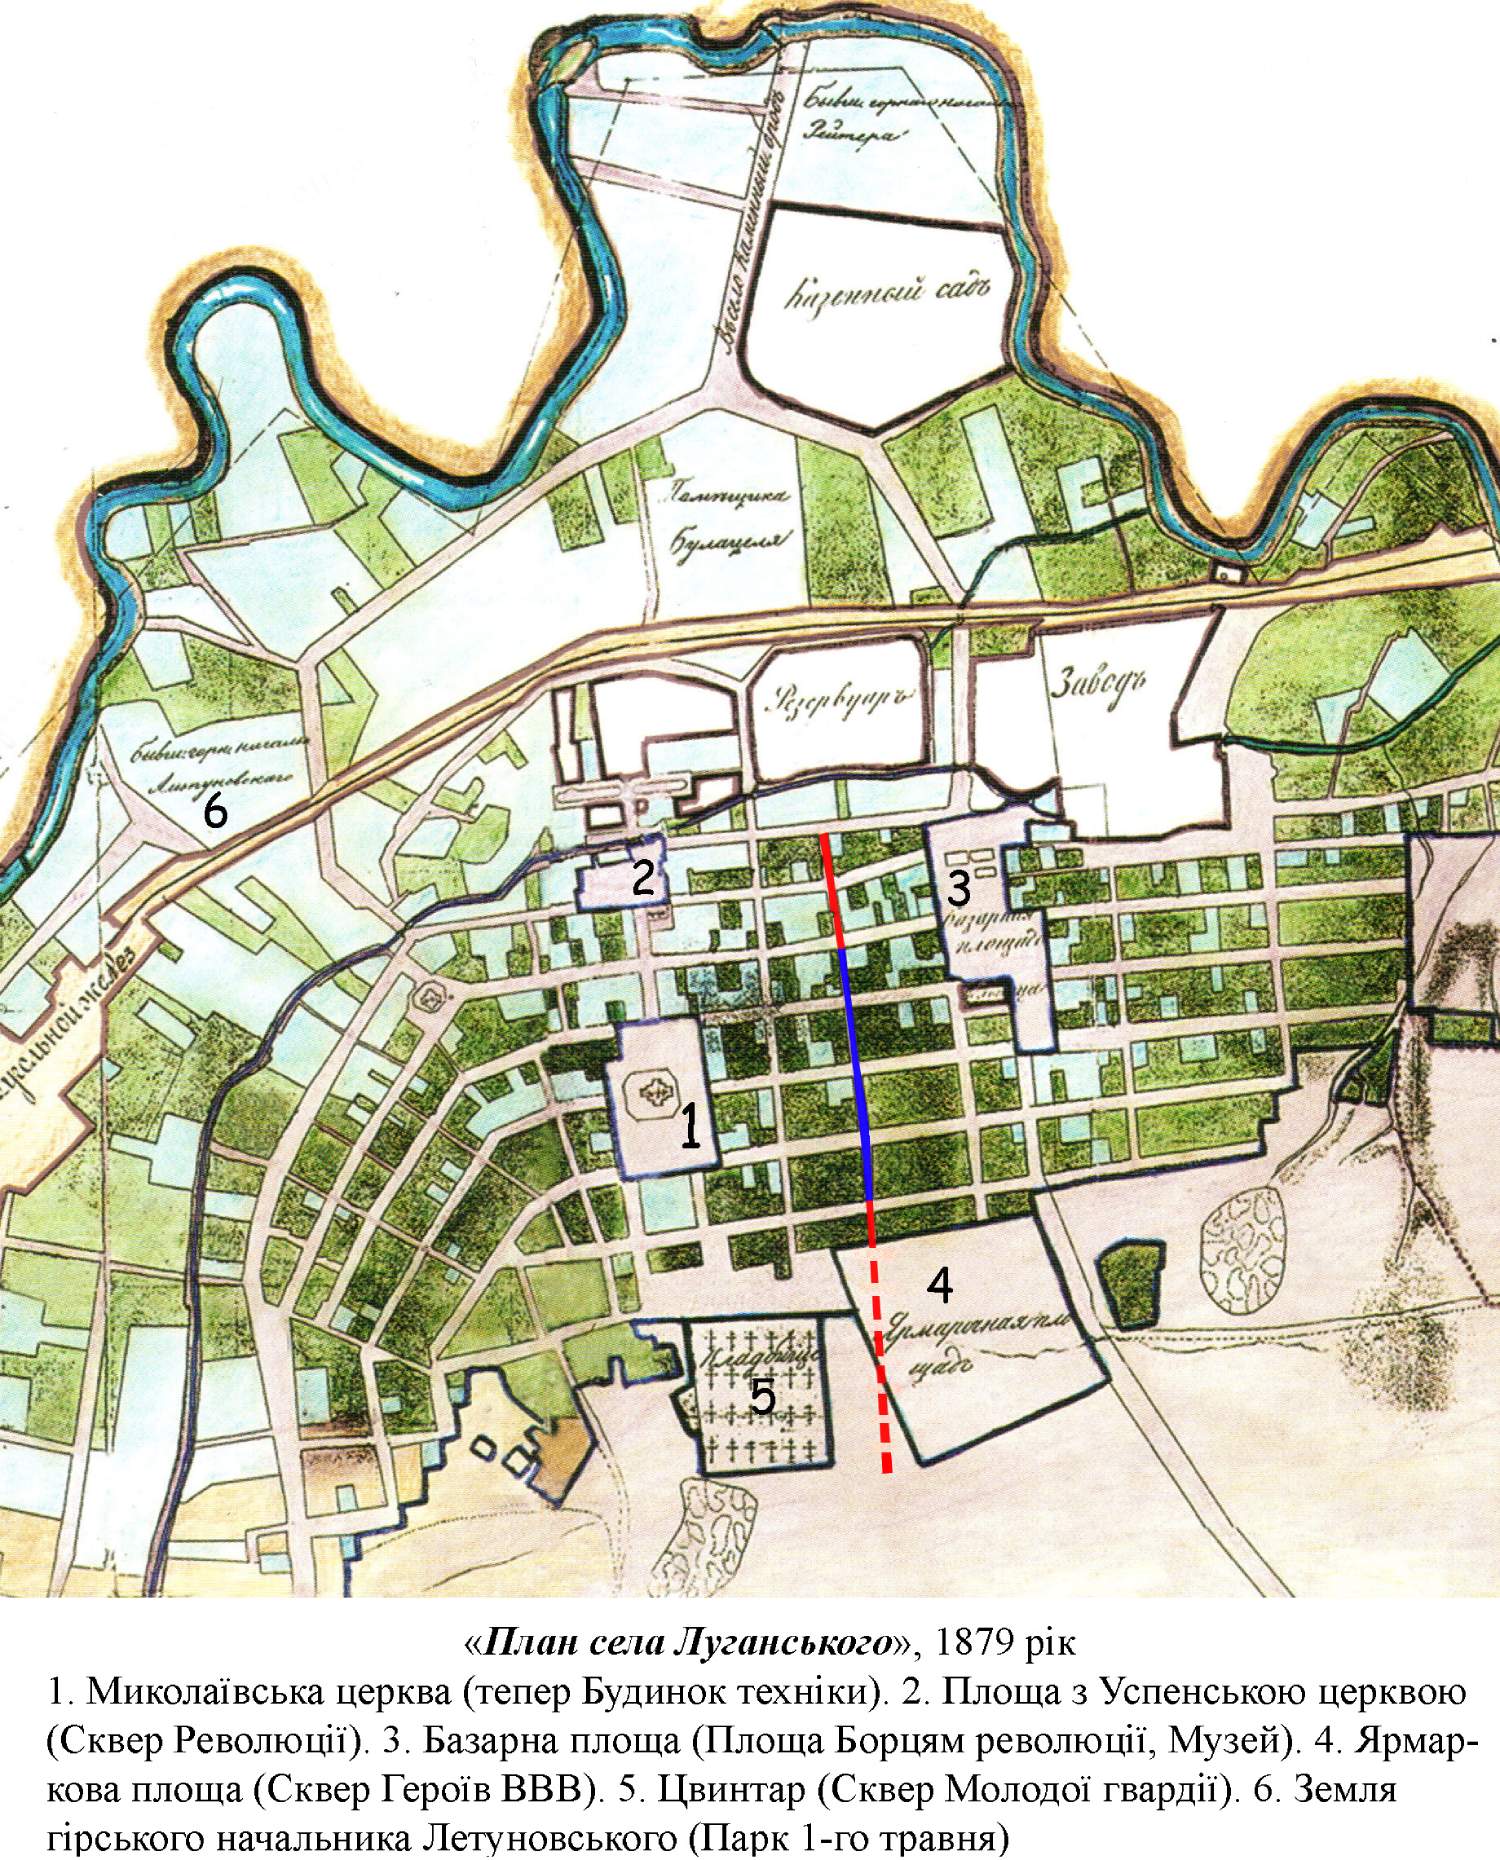 Луганськ і війна: історія архітектури. Карта Луганська, 1879 рік